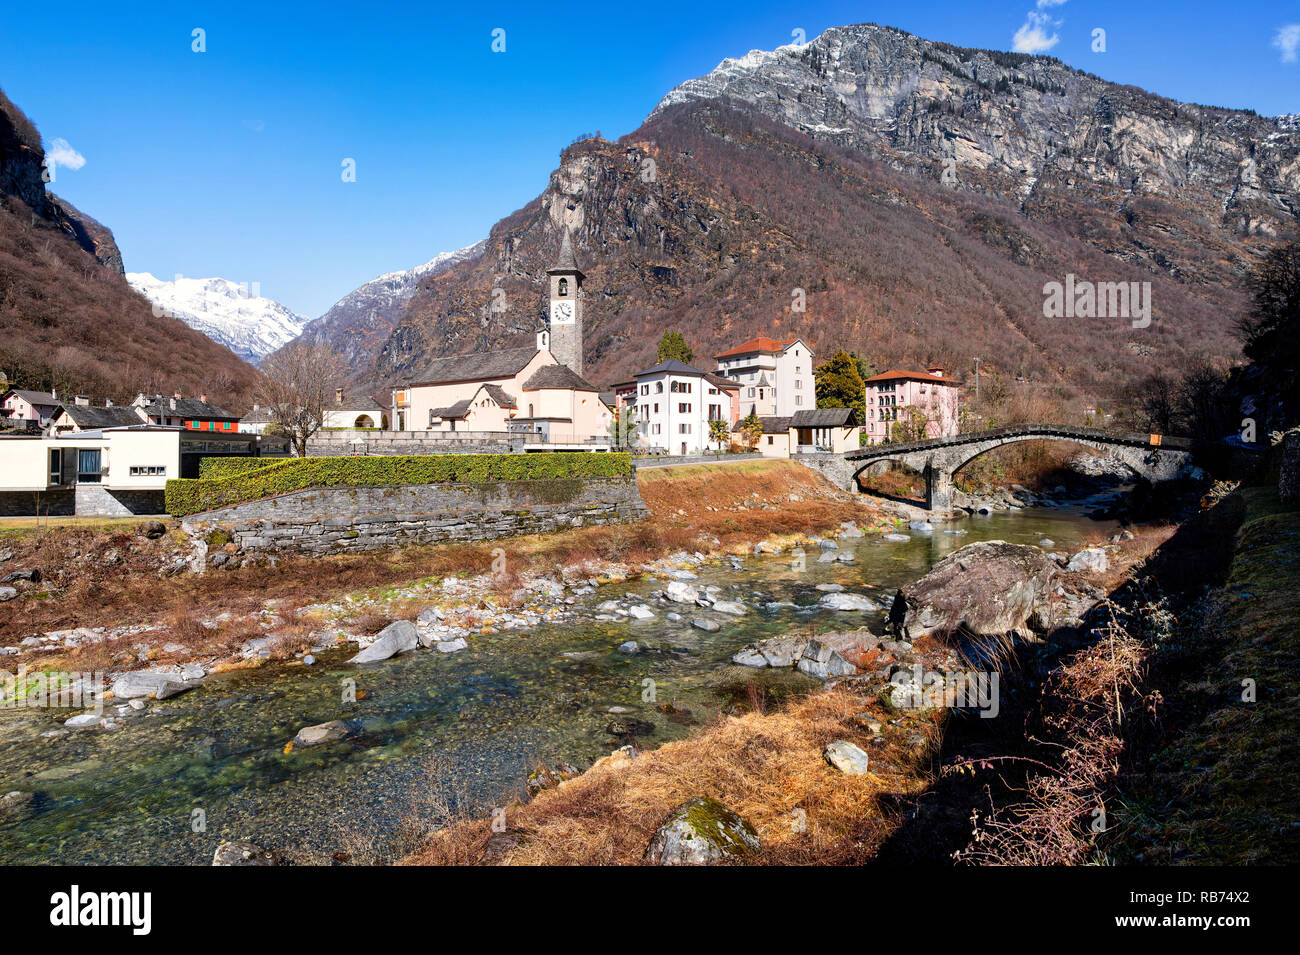 La aldea de Bignasco en valle Maggia con puente histórico Foto de stock